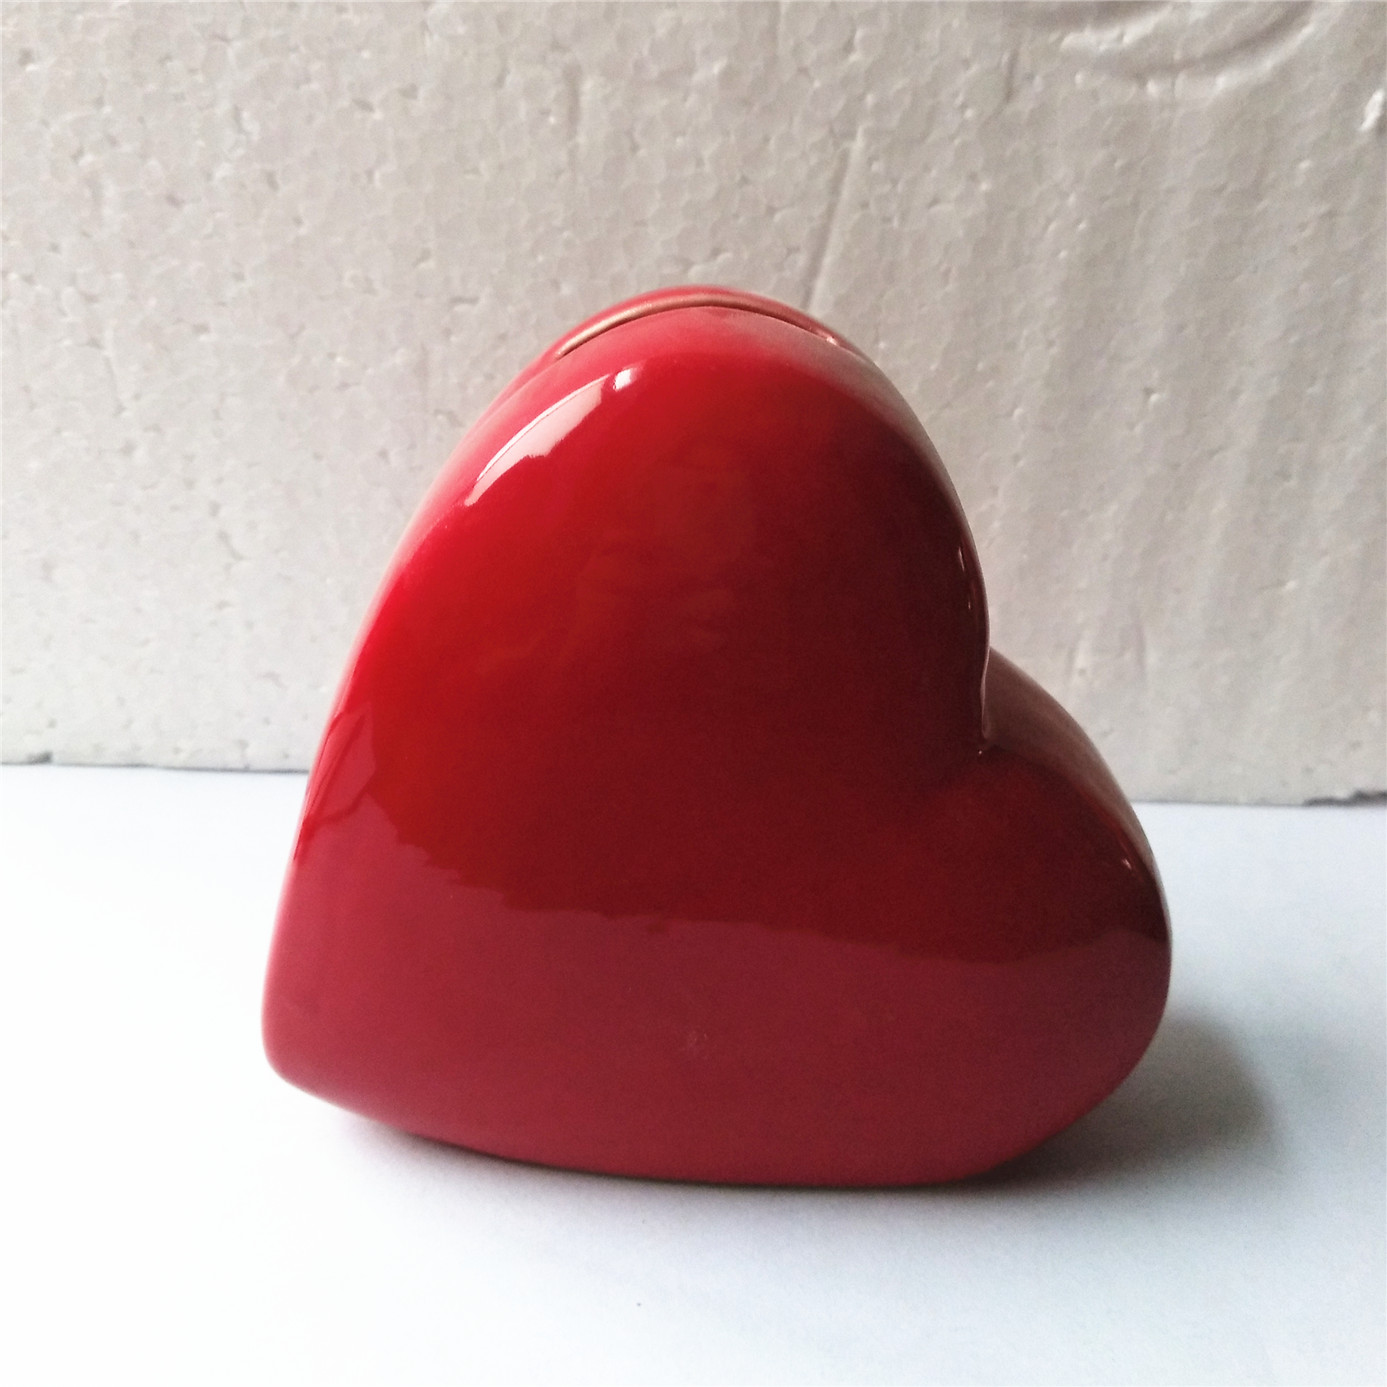 Ceramic  red heart shape money piggy bank  best wedding piggy bank gift